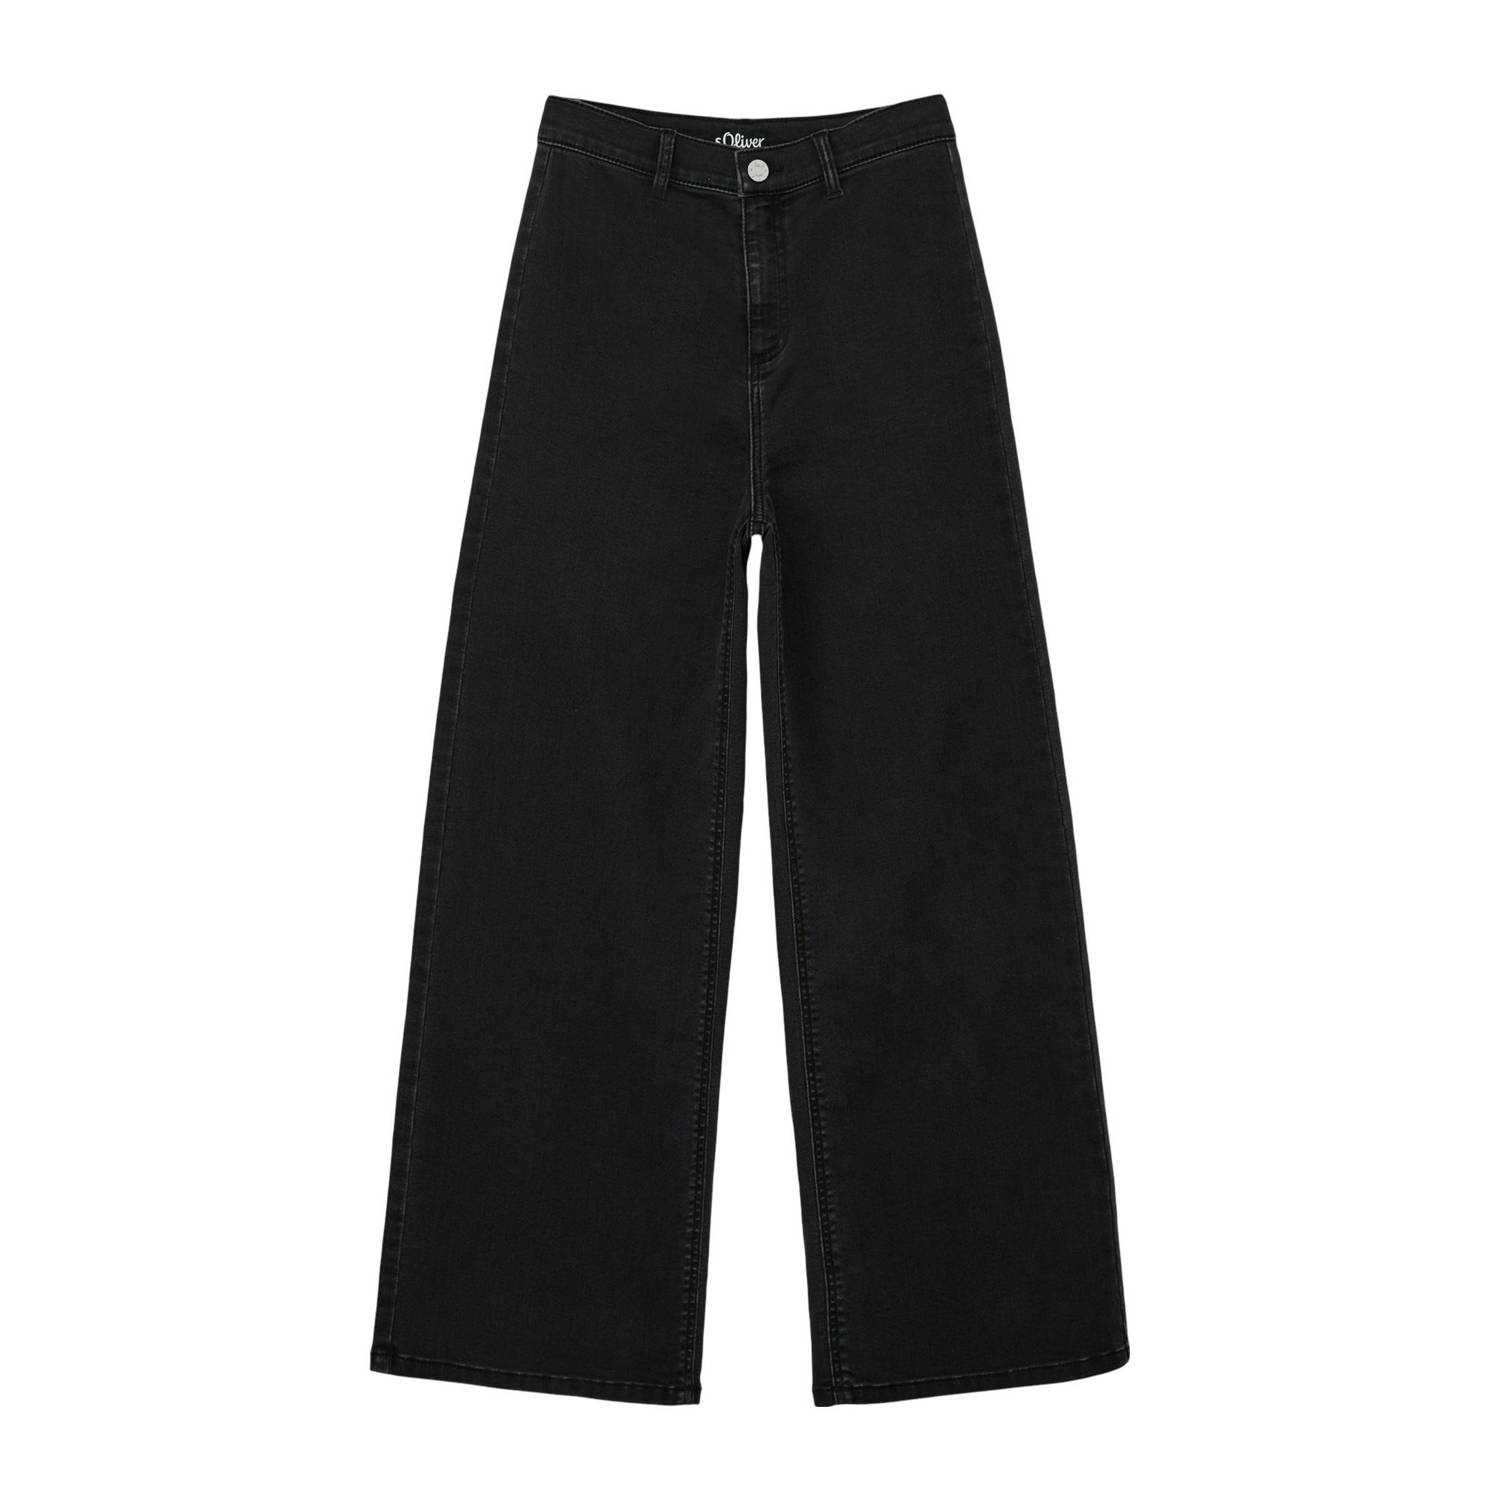 S.Oliver high waist wide leg jeans black denim Zwart Meisjes Stretchdenim 134